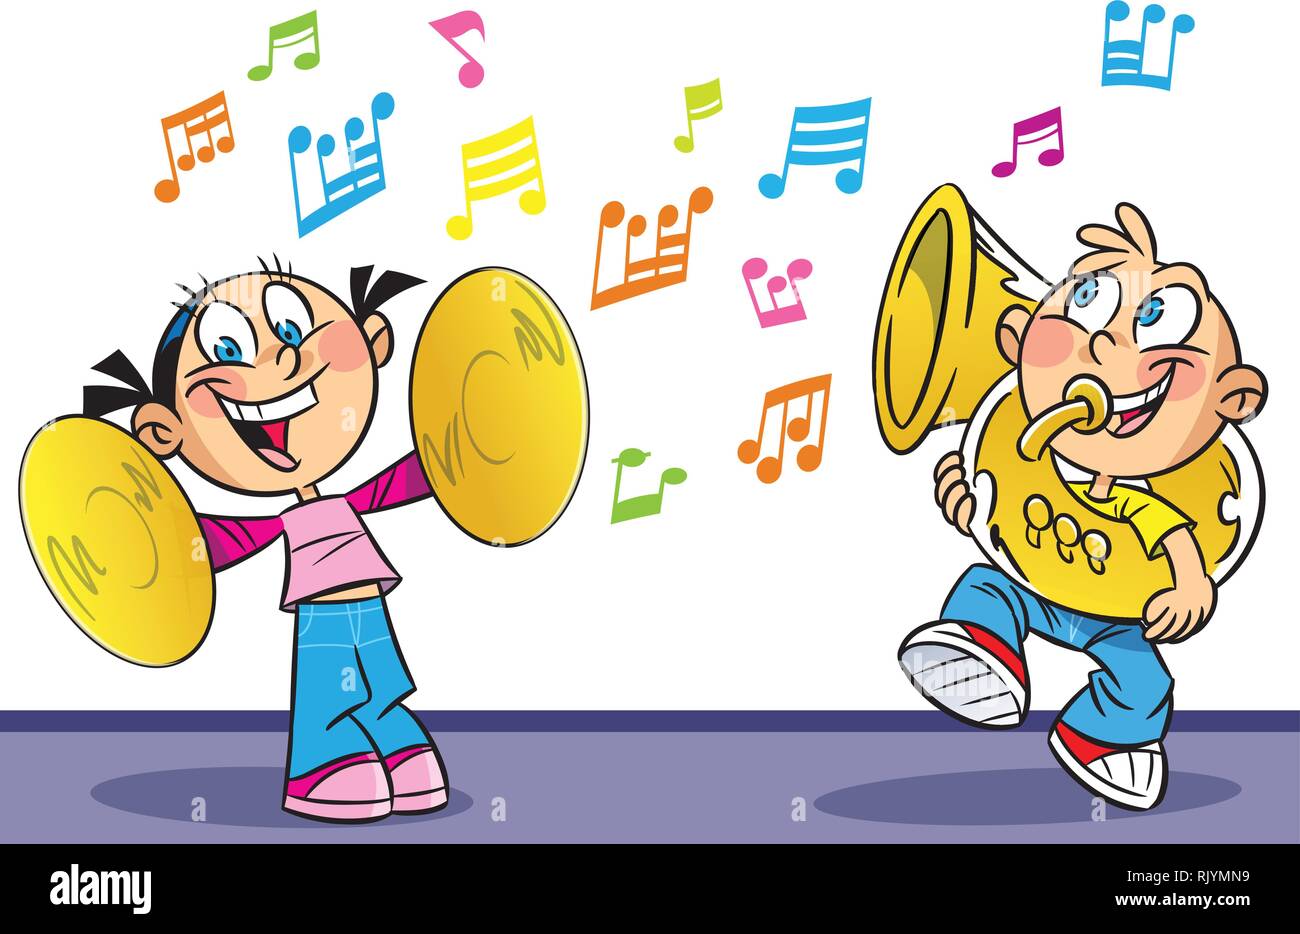 L'illustration suivante montre cartoon garçon et fille qui jouent des instruments de musique. Illustration faite sur des calques distincts. Illustration de Vecteur